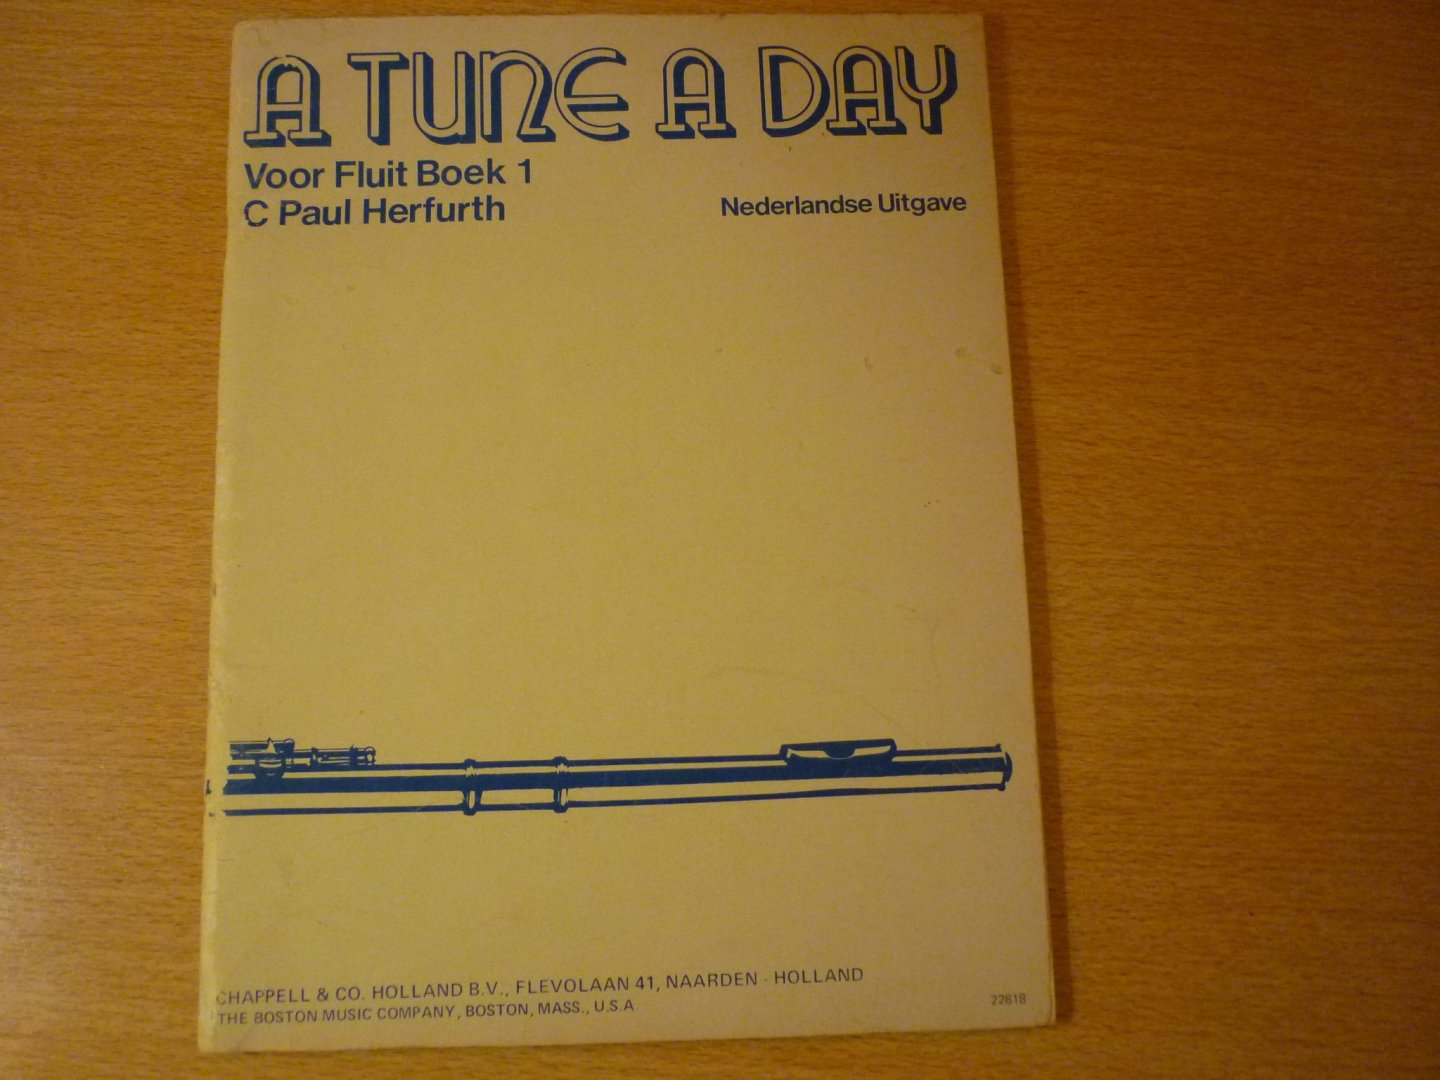 Herfurth; C Paul; Nederlandse bewerking: Maria en Jan Baggerman - A Tune A Day;  voor Fluit - Boek 1